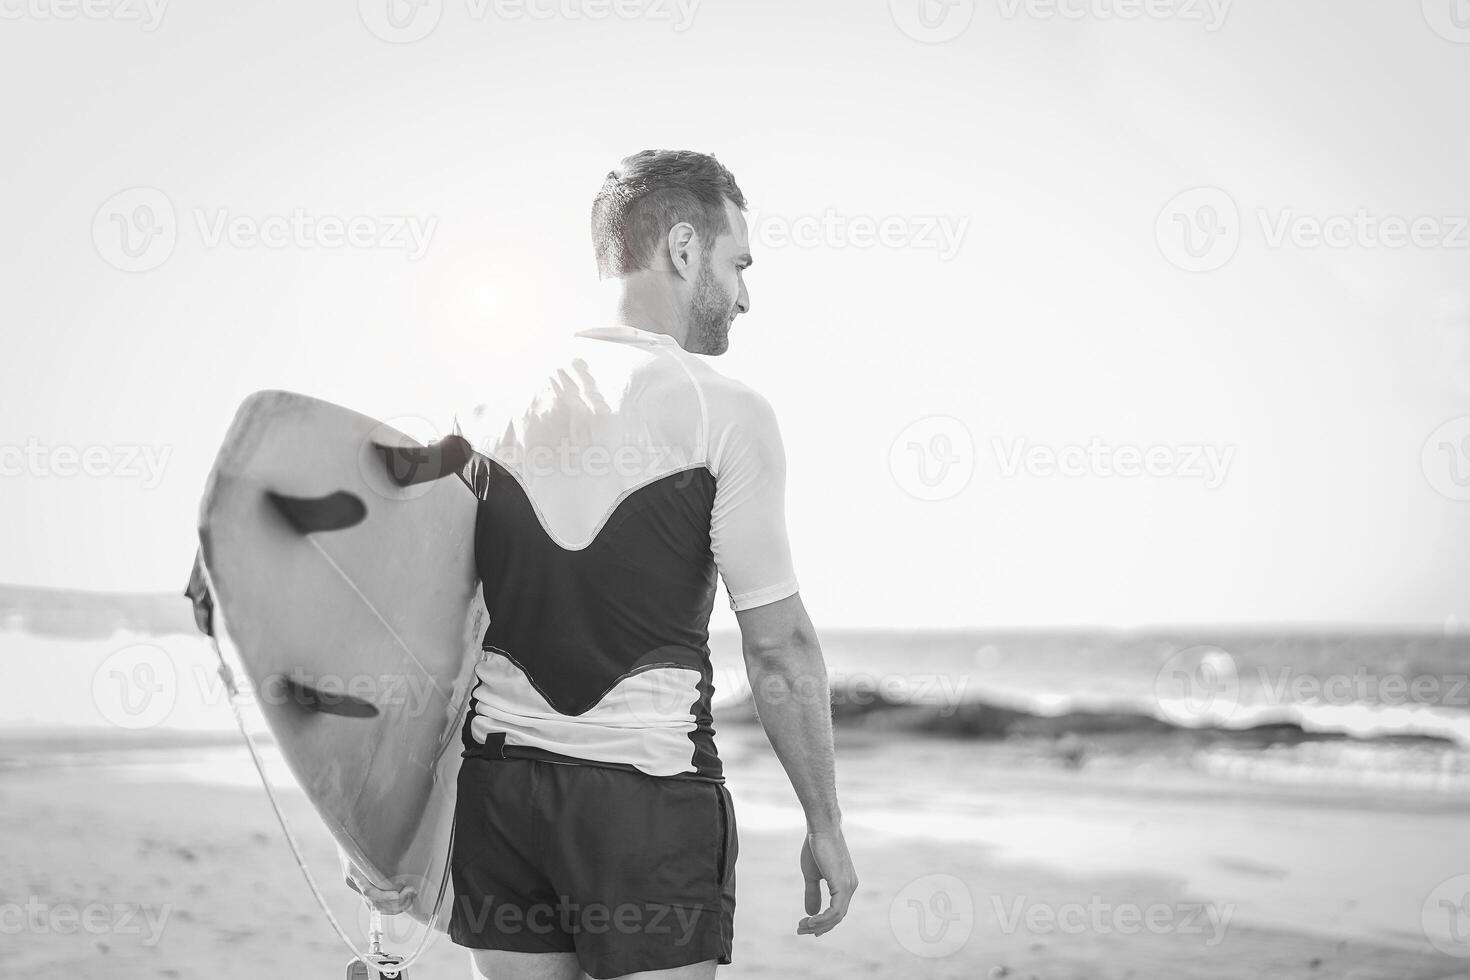 jovem surfista segurando dele prancha de surfe em a de praia - bonito homem esperando ondas para surfar - Preto e branco edição - pessoas, esporte e estilo de vida conceito foto